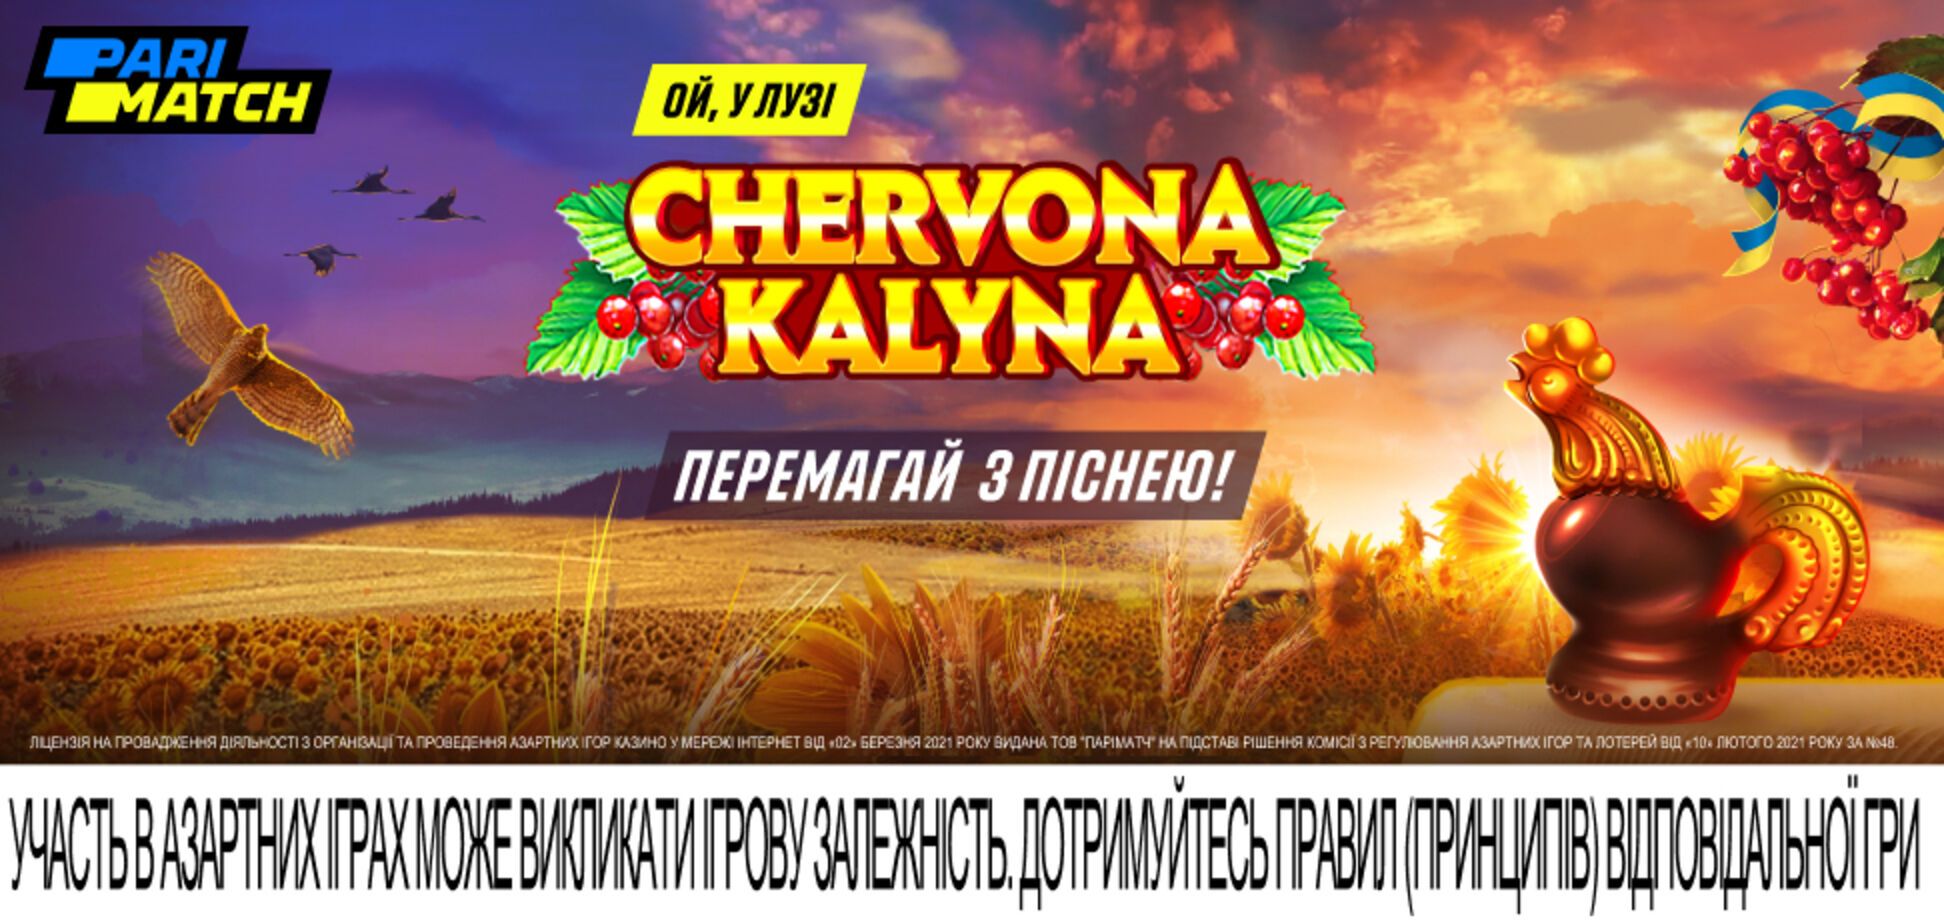 Побеждай с песней! Сhervona Kalyna – новая игра для поддержки патриотического настроения!